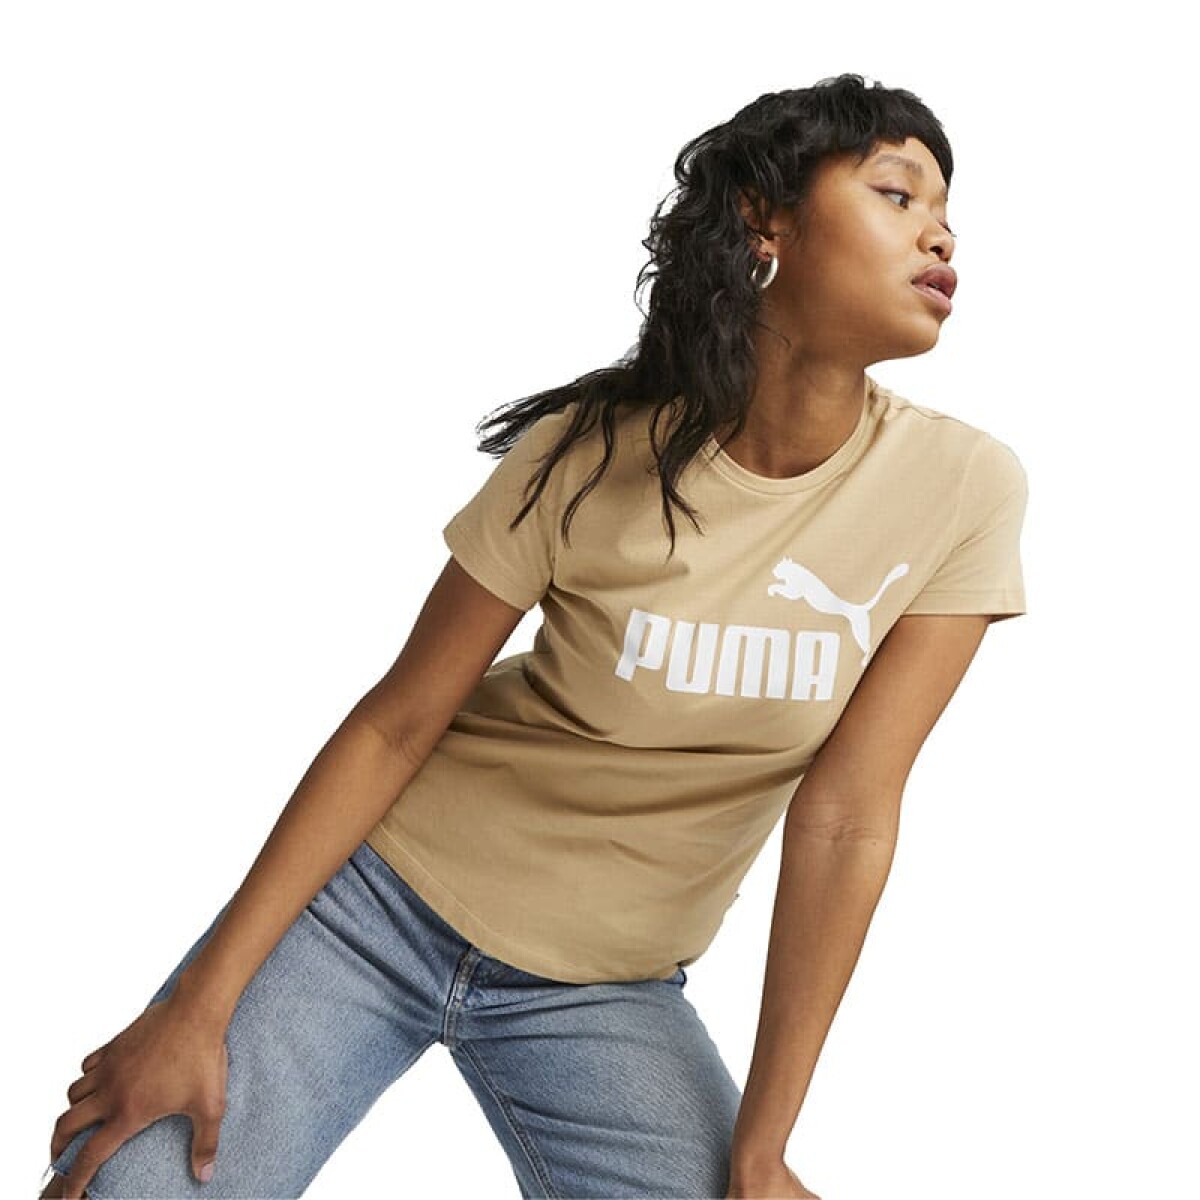 Remera Puma Logo de Mujer - 586775 87 - Beige 